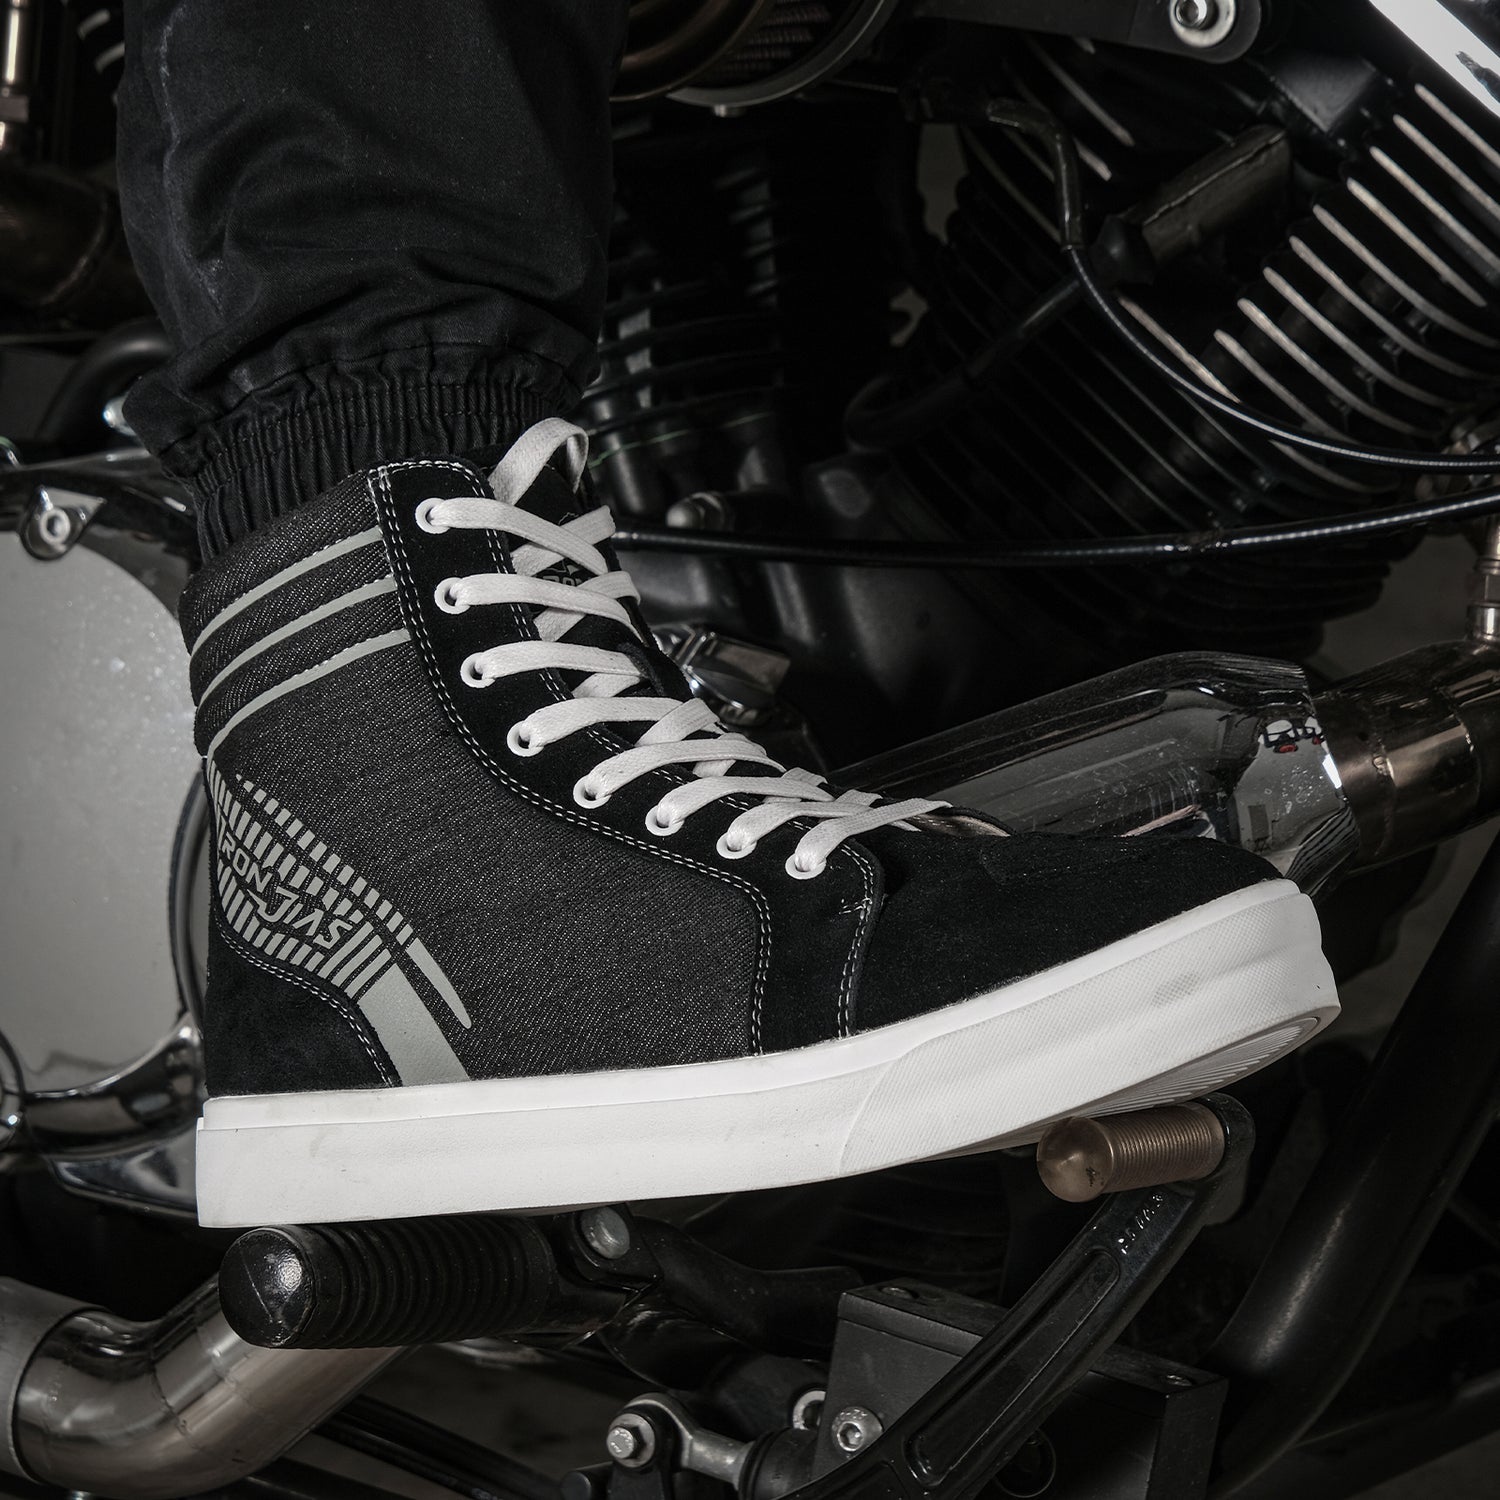 Urban Anti-Slip Motorcycle Riding Shoes For Men